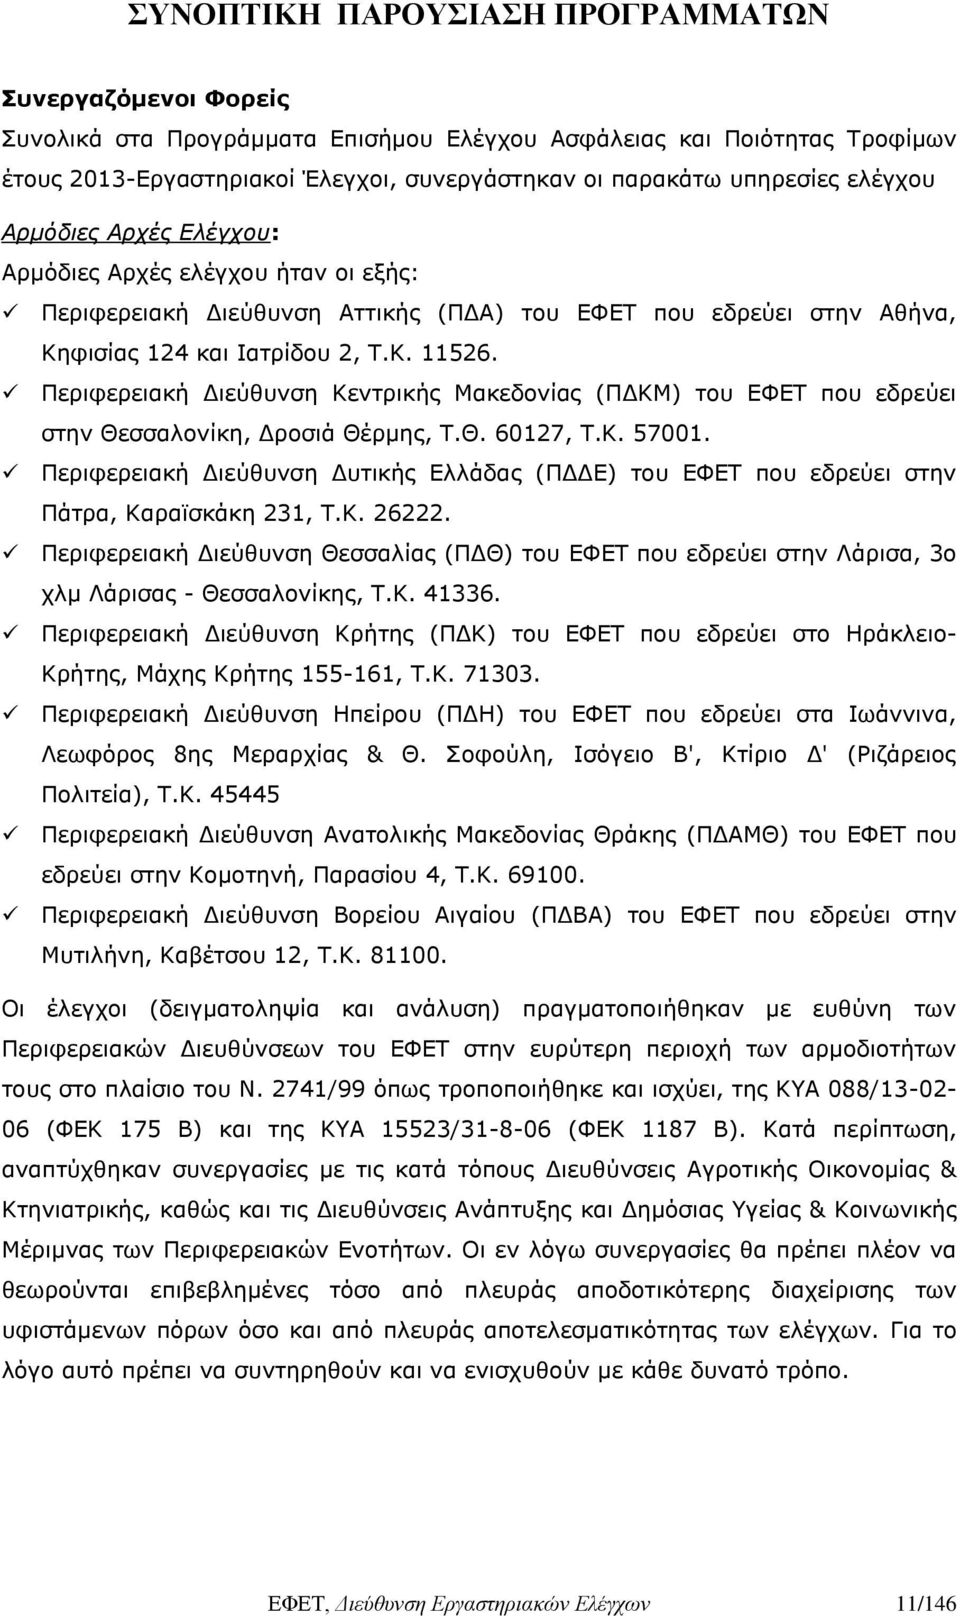 Περιφερειακή Διεύθυνση Κεντρικής Μακεδονίας (ΠΔΚΜ) του ΕΦΕΤ που εδρεύει στην Θεσσαλονίκη, Δροσιά Θέρμης, Τ.Θ. 60127, Τ.Κ. 57001.